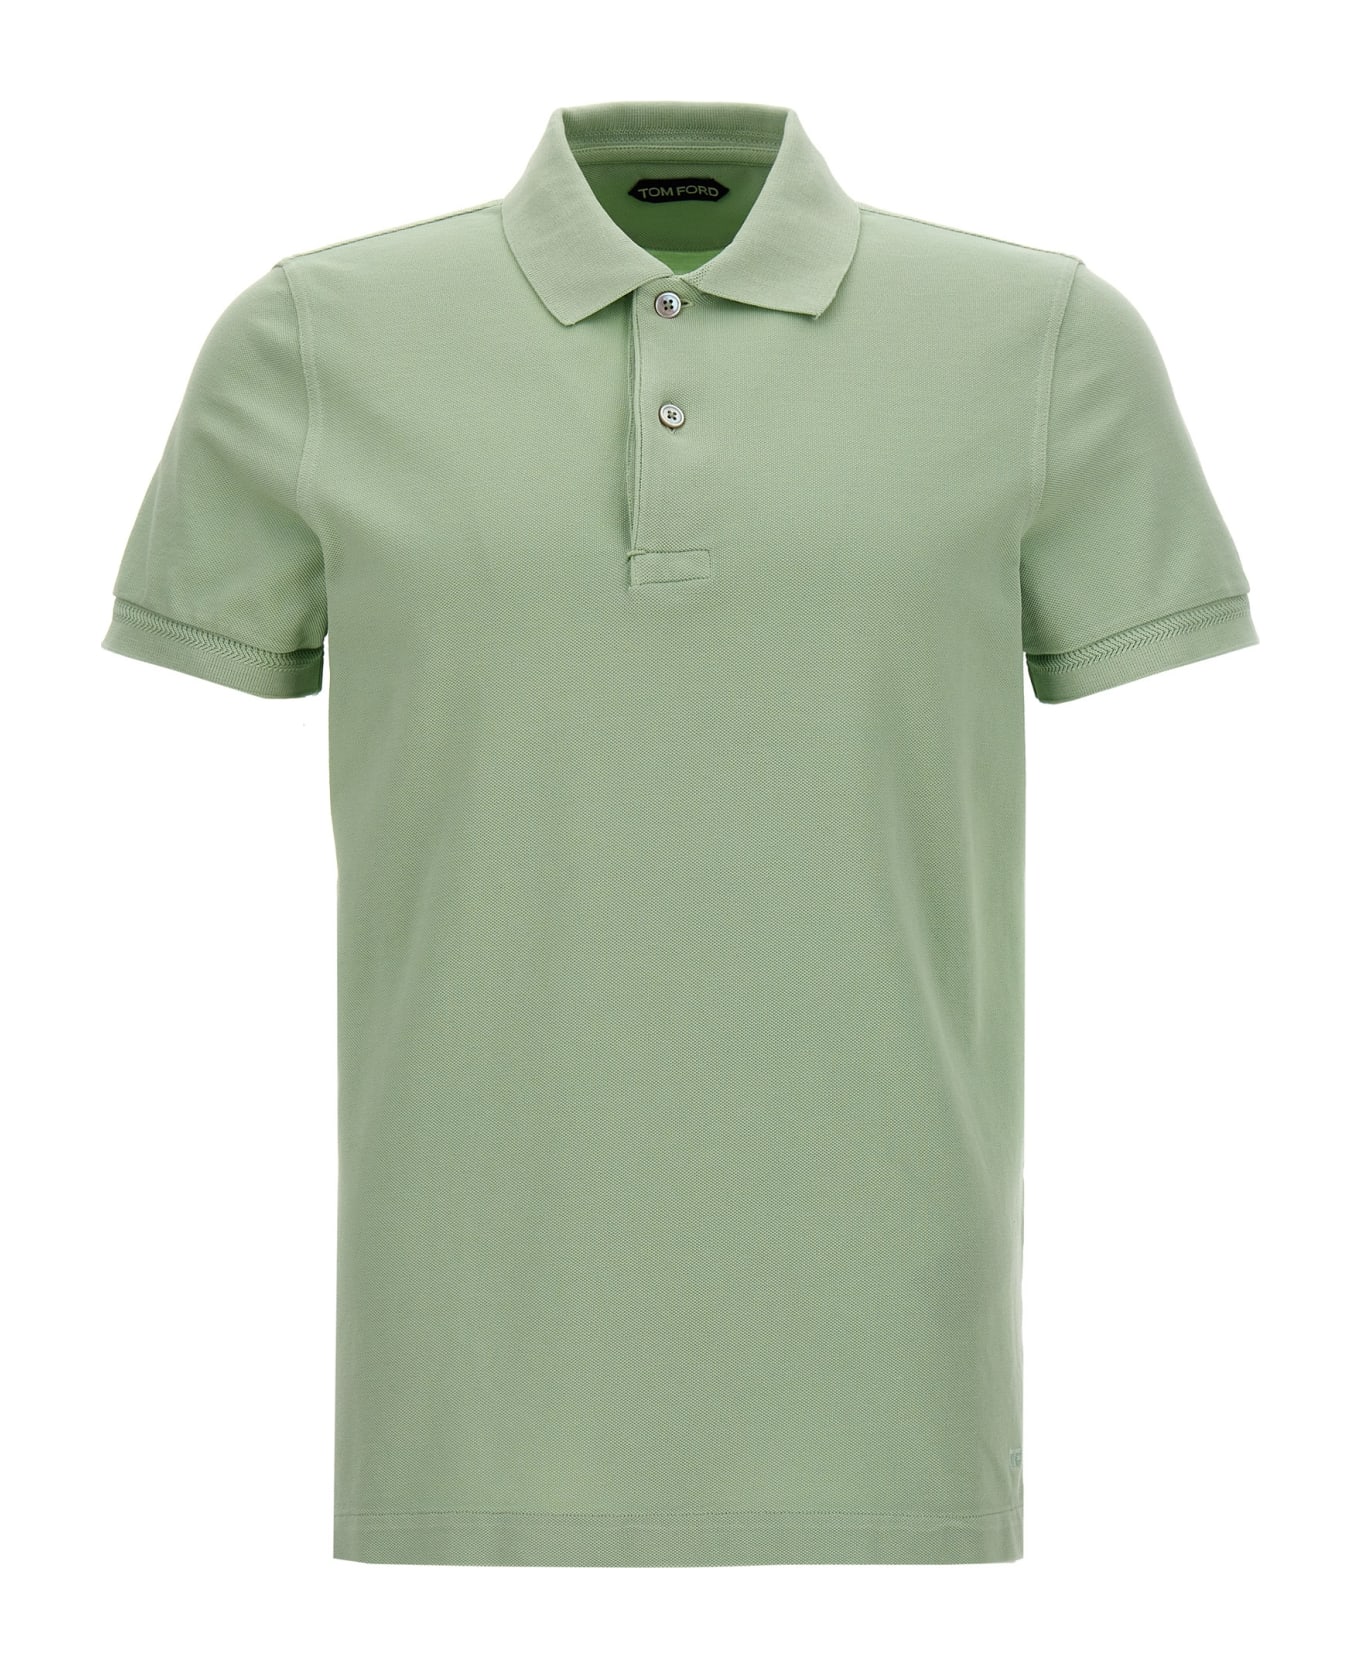 Tom Ford 'tennis Piquet' Polo Shirt - Green